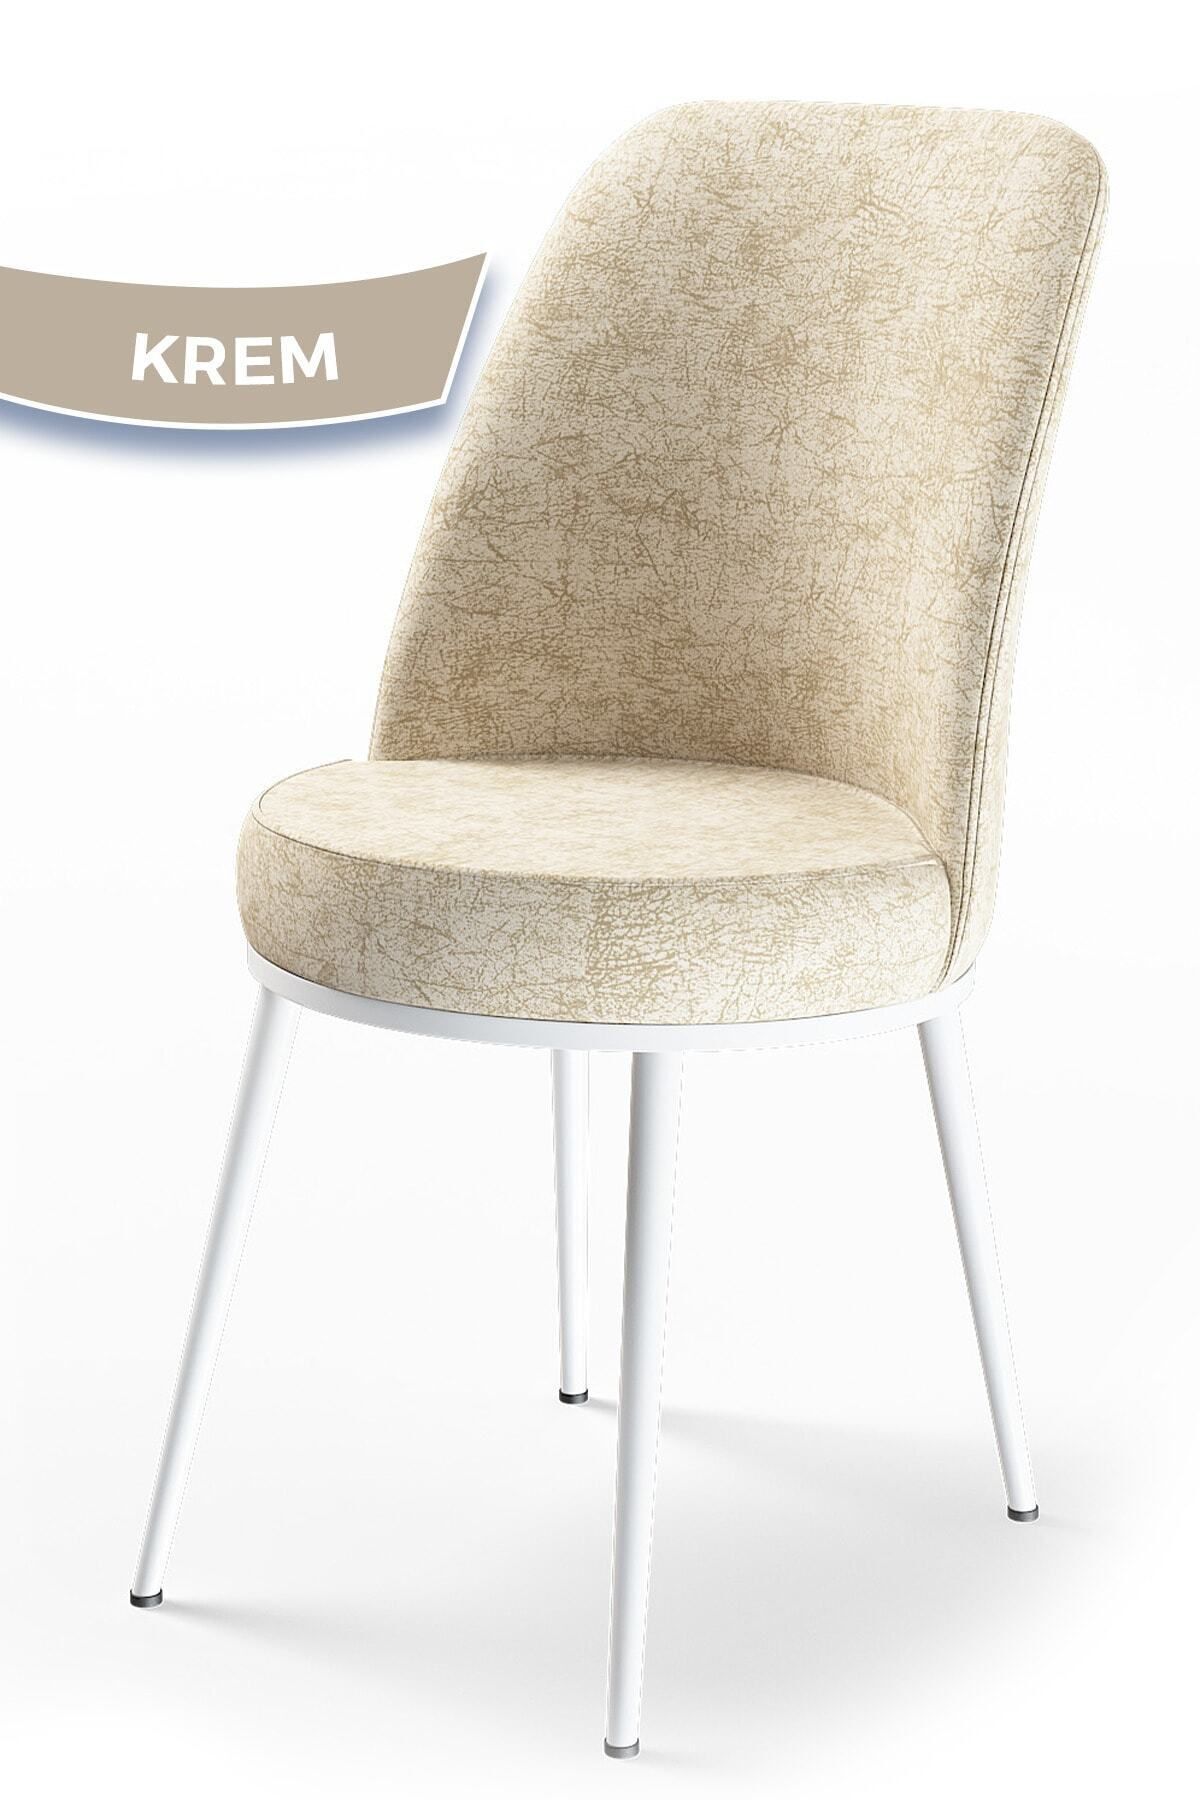 Canisa Concept Dexa Serisi Krem Renk Sandalye Mutfak Sandalyesi, Yemek Sandalyesi Ayaklar Beyaz